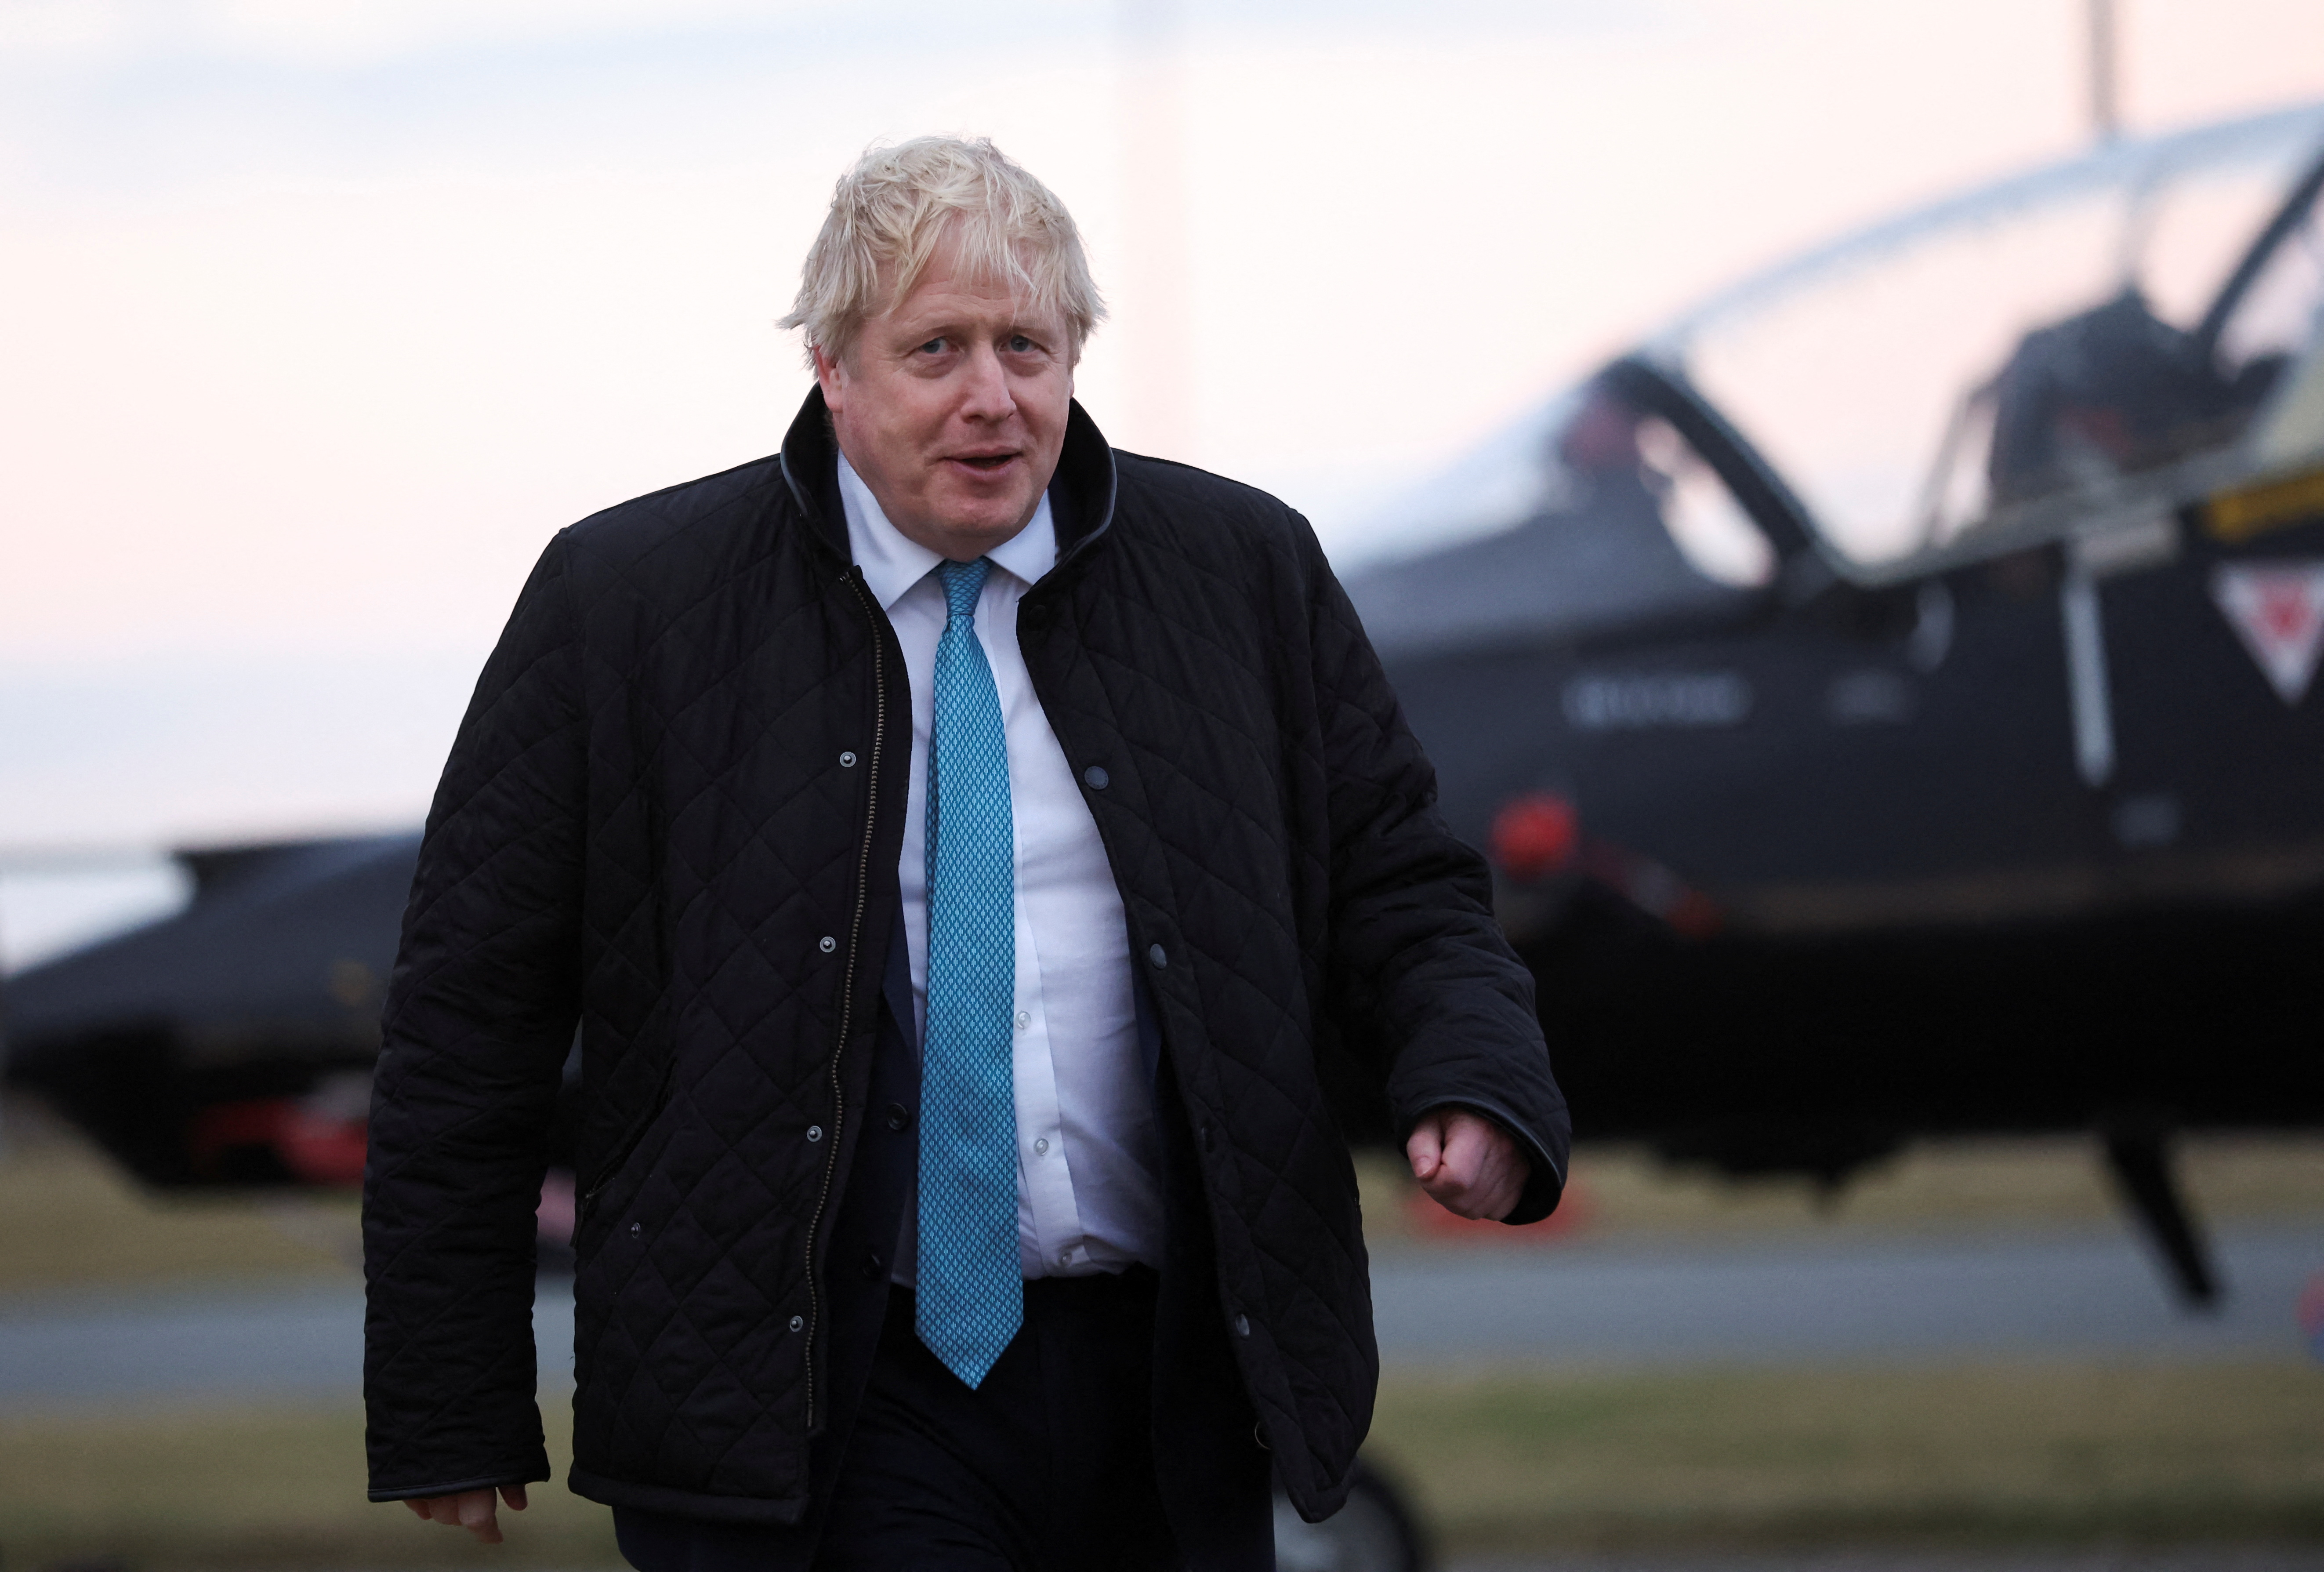 El primer ministro británico, Boris Johnson, visita RAF Valley en Anglesey, Gran Bretaña 27 de enero de 2022. REUTERS/Carl Recine